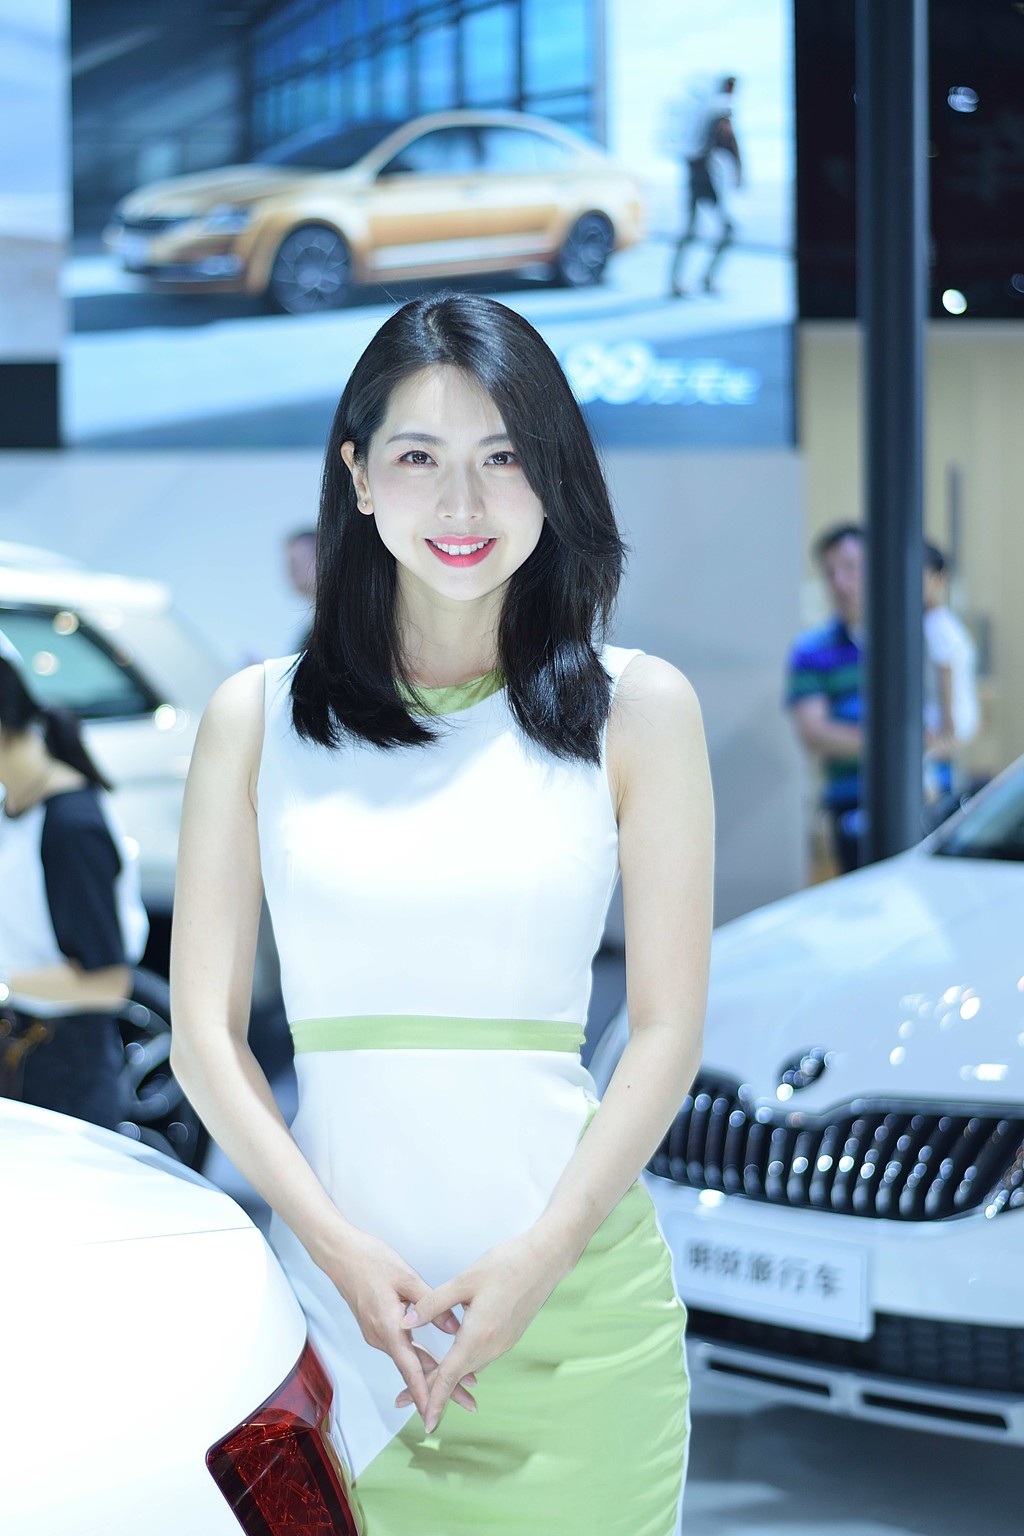 韩国美女车模迷人笑容完美身材中原国际车展写真  第7张